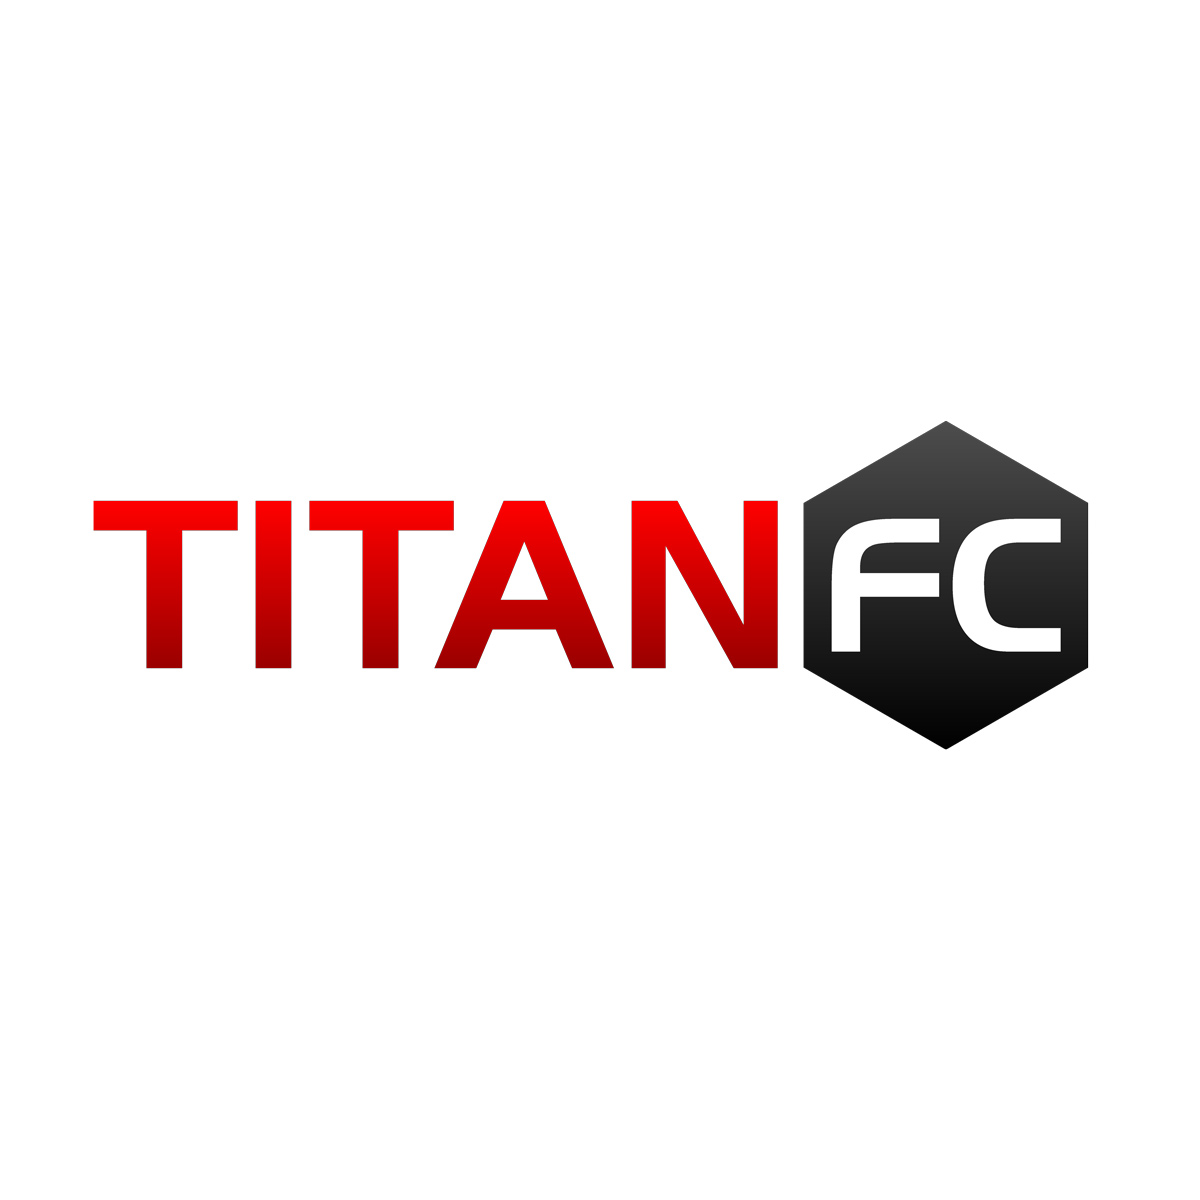 Titan FC